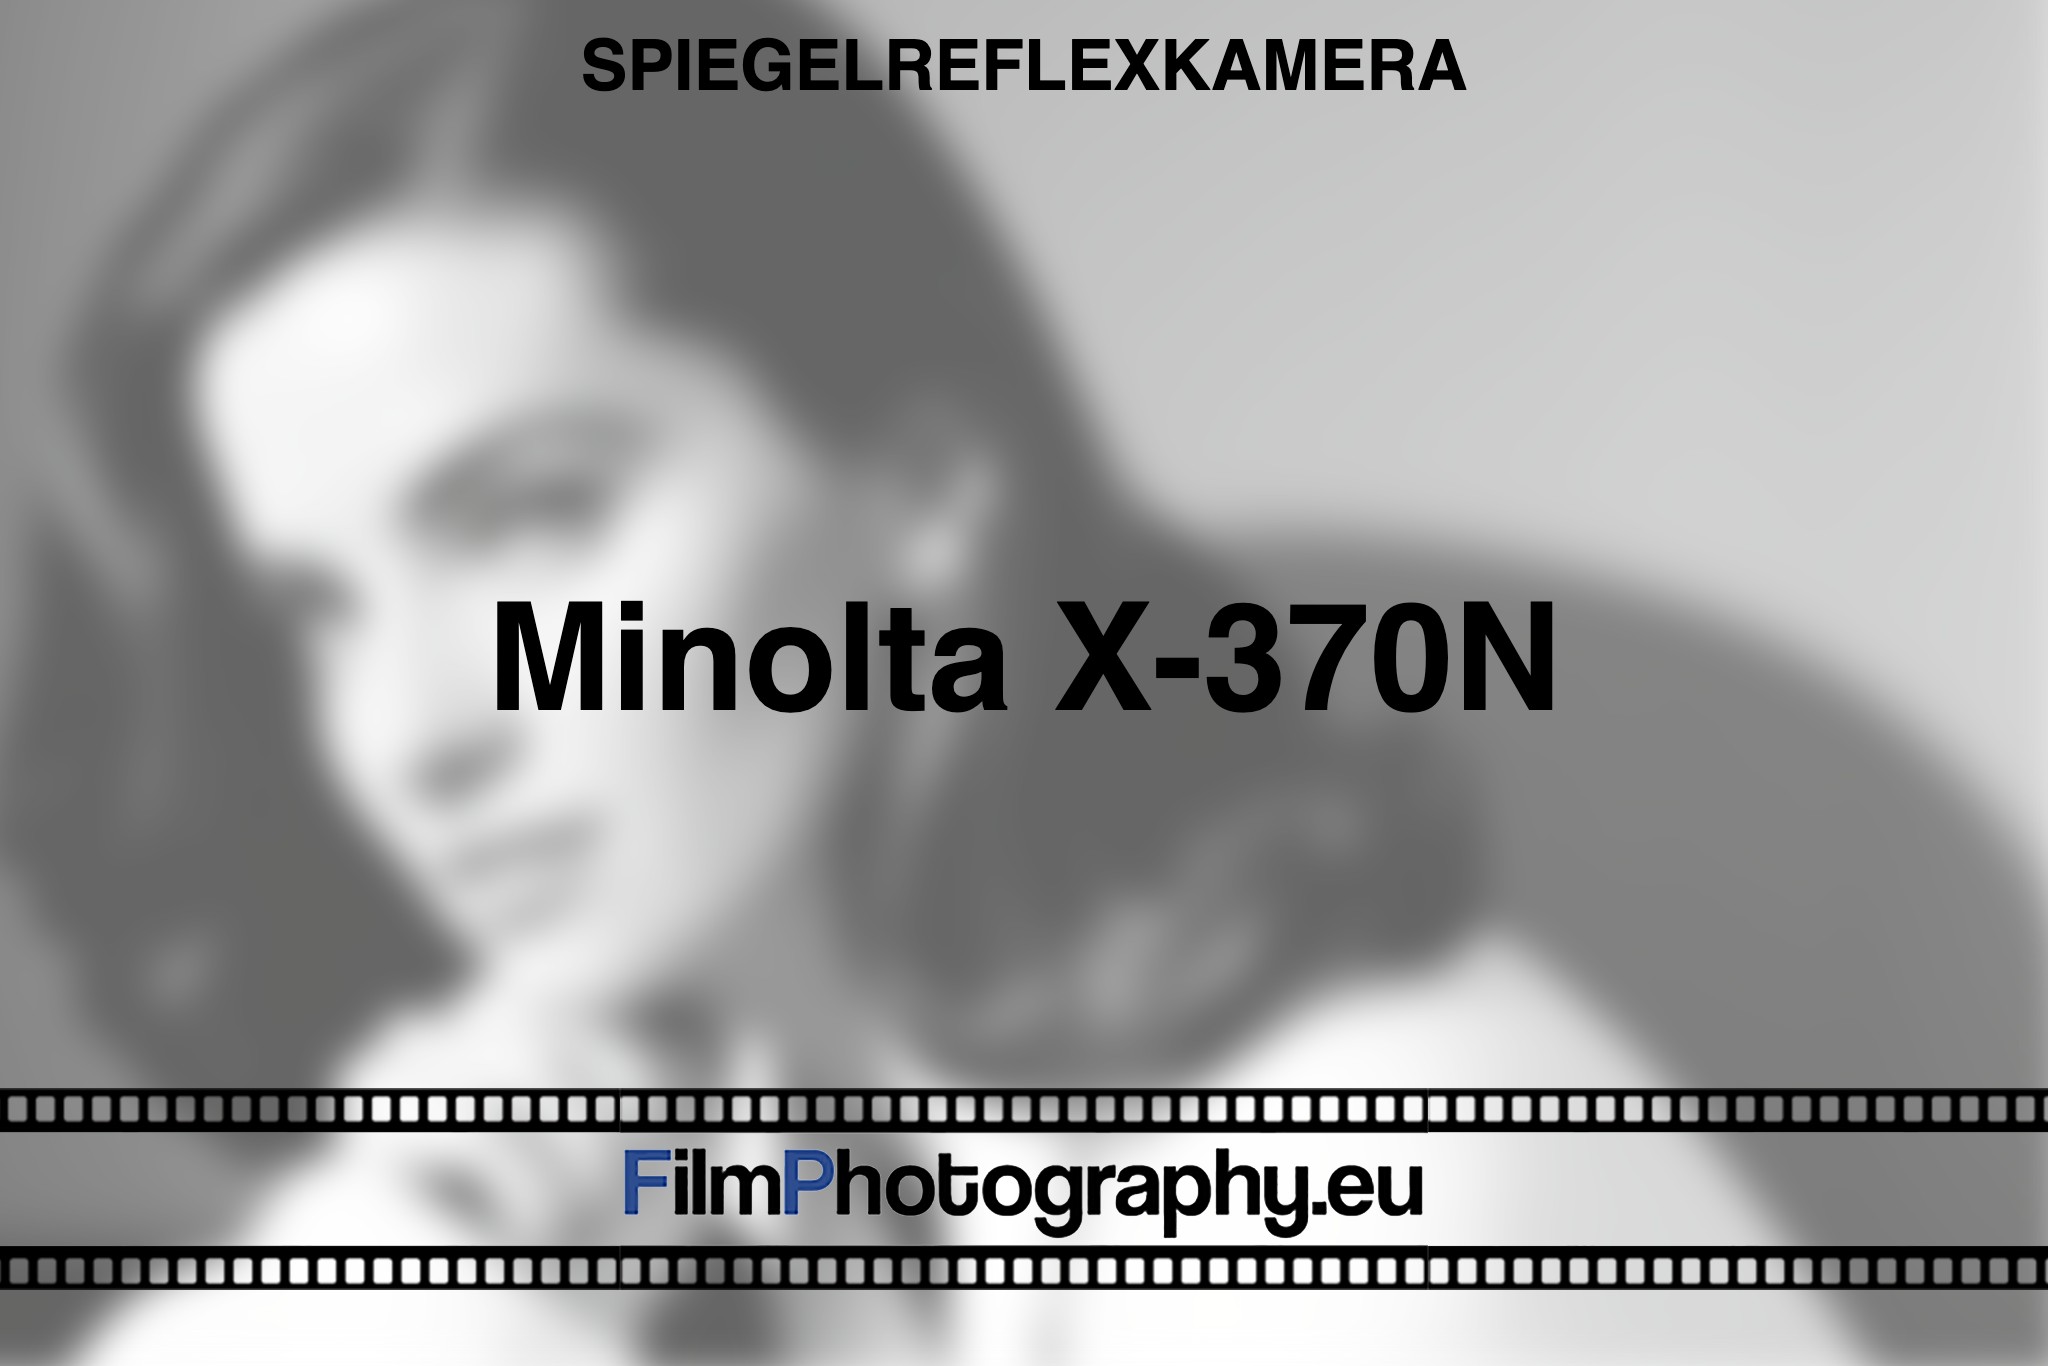 minolta-x-370n-spiegelreflexkamera-bnv